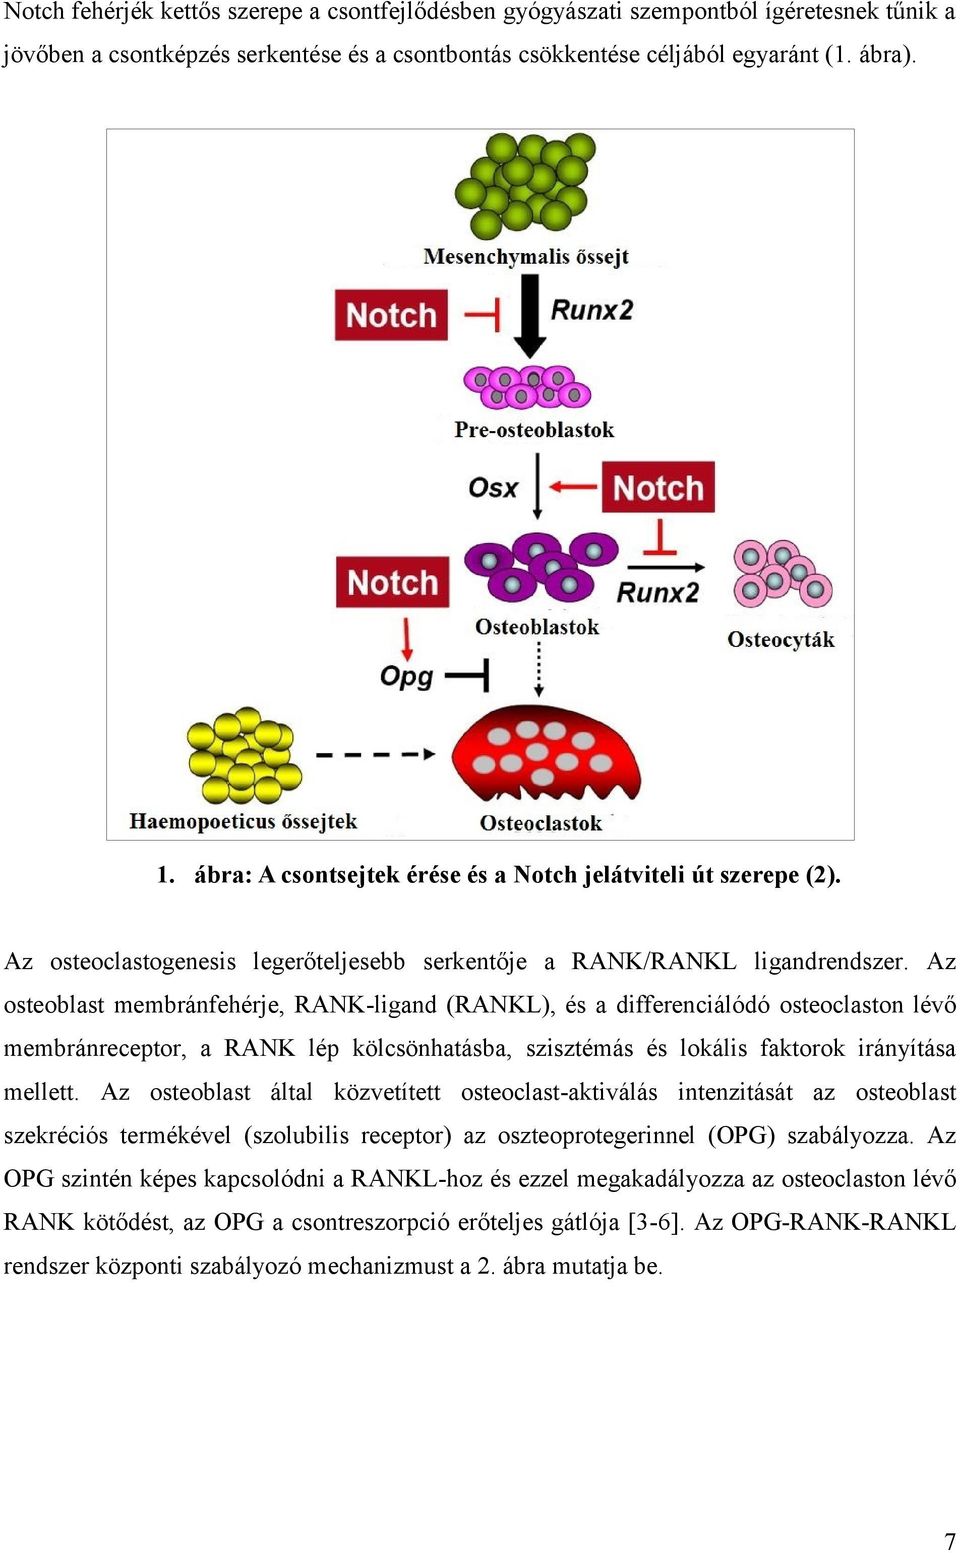 Az osteoblast membránfehérje, RANK-ligand (RANKL), és a differenciálódó osteoclaston lévő membránreceptor, a RANK lép kölcsönhatásba, szisztémás és lokális faktorok irányítása mellett.